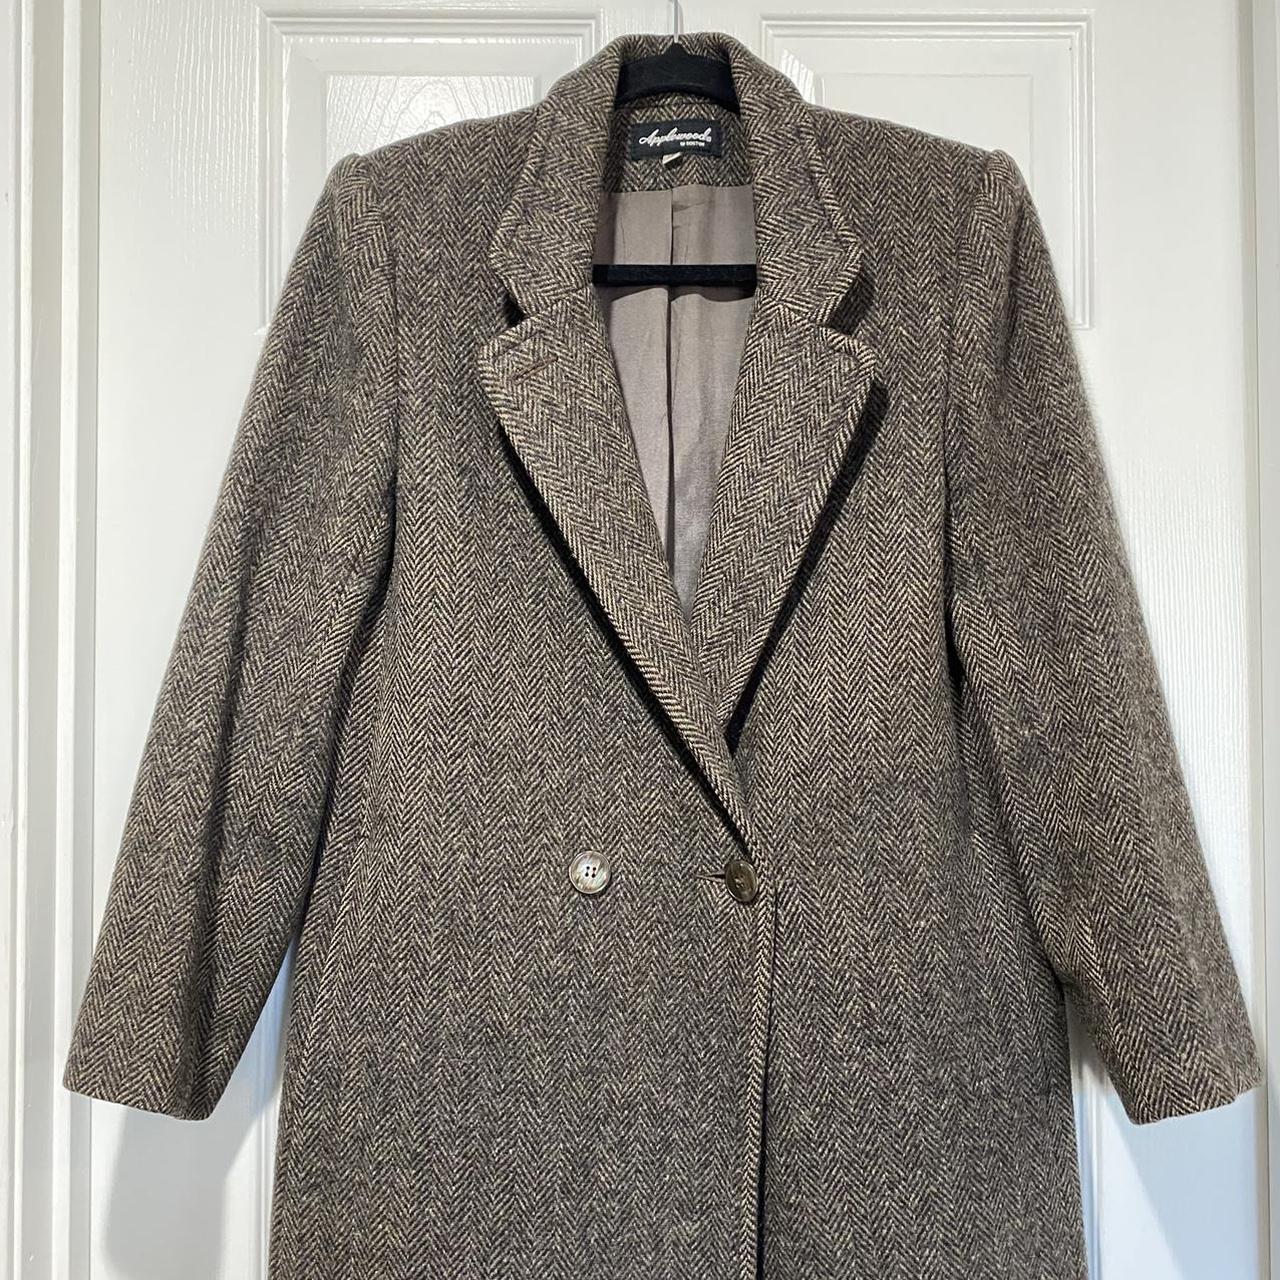 Vintage Herringbone Long Wool Coat Classic Academic... - Depop